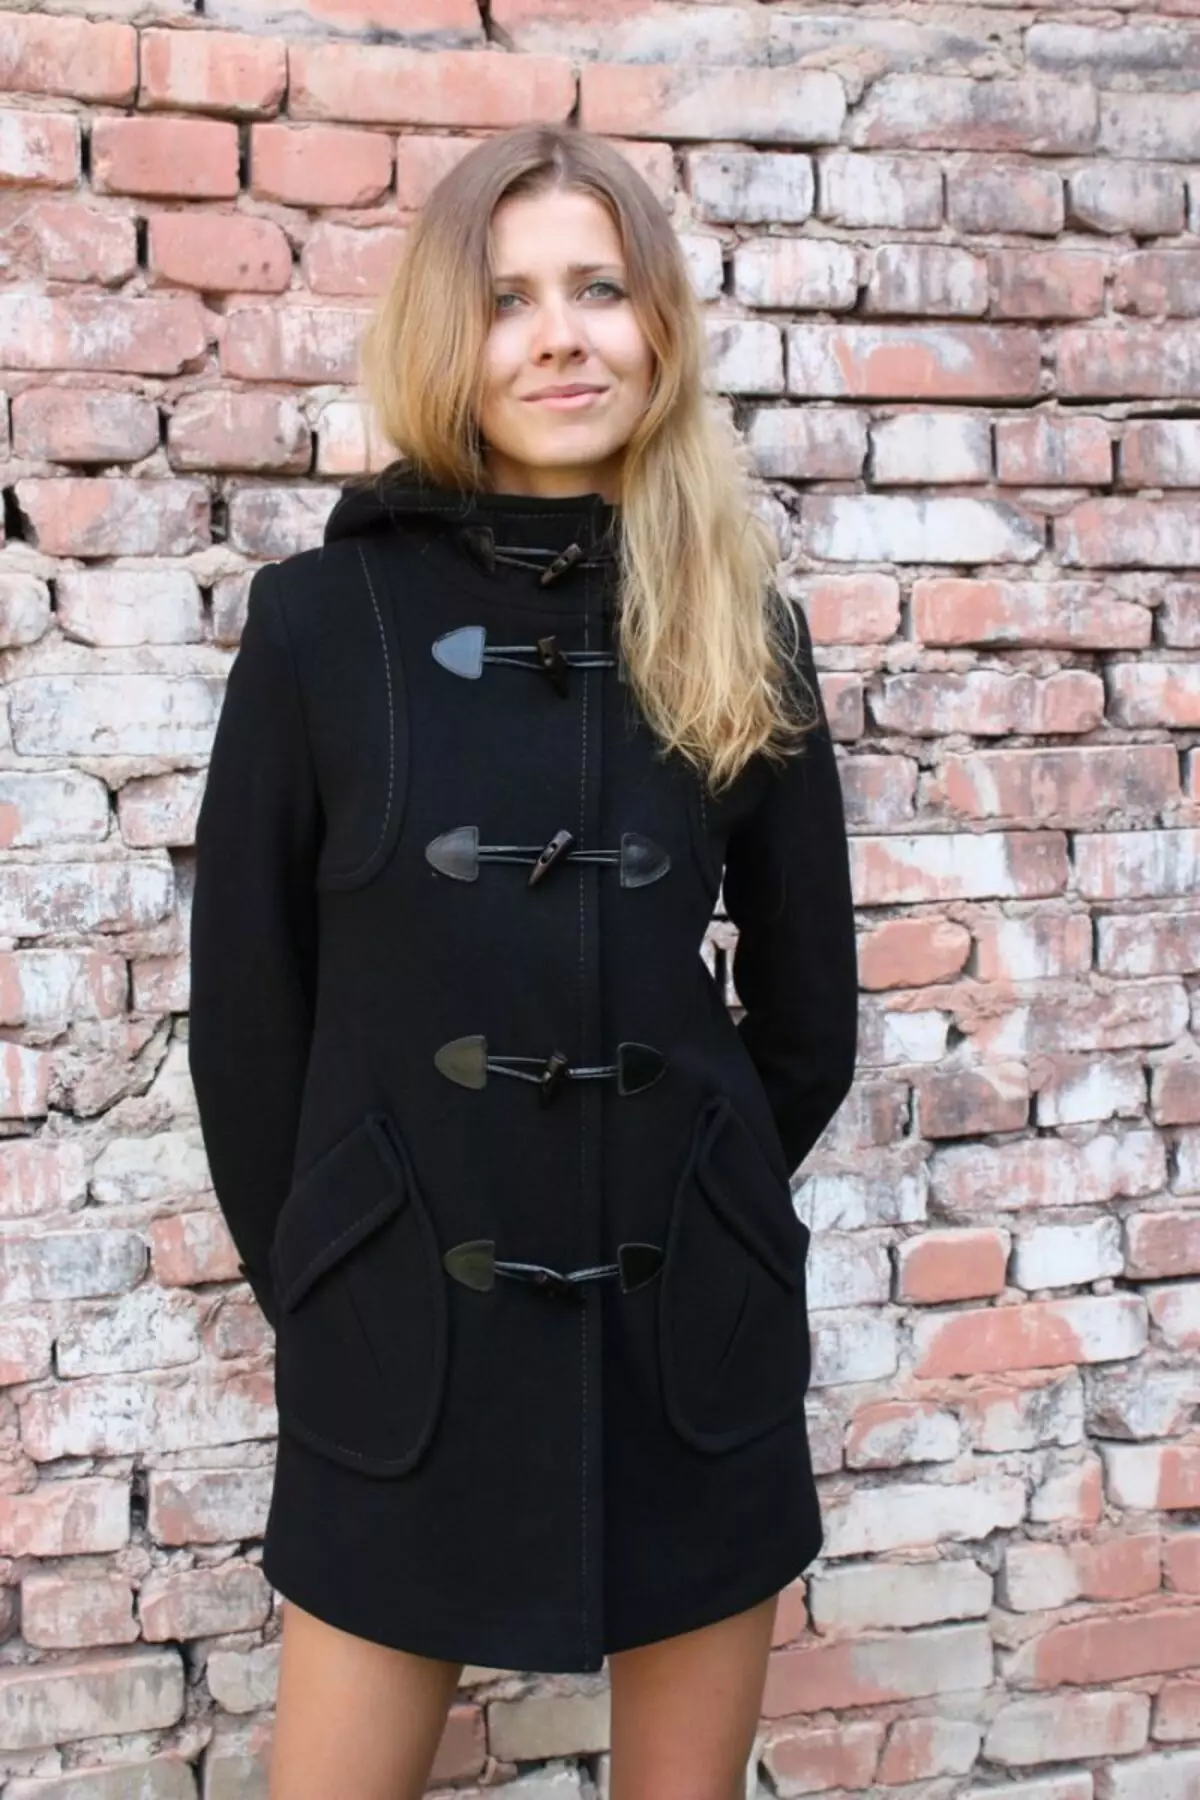 Female frakke Spring 2021 (356 Billeder): Fra russiske producenter, modeller, stilarter og stilarter, quiltet, kort, dæmpning, læder 623_205